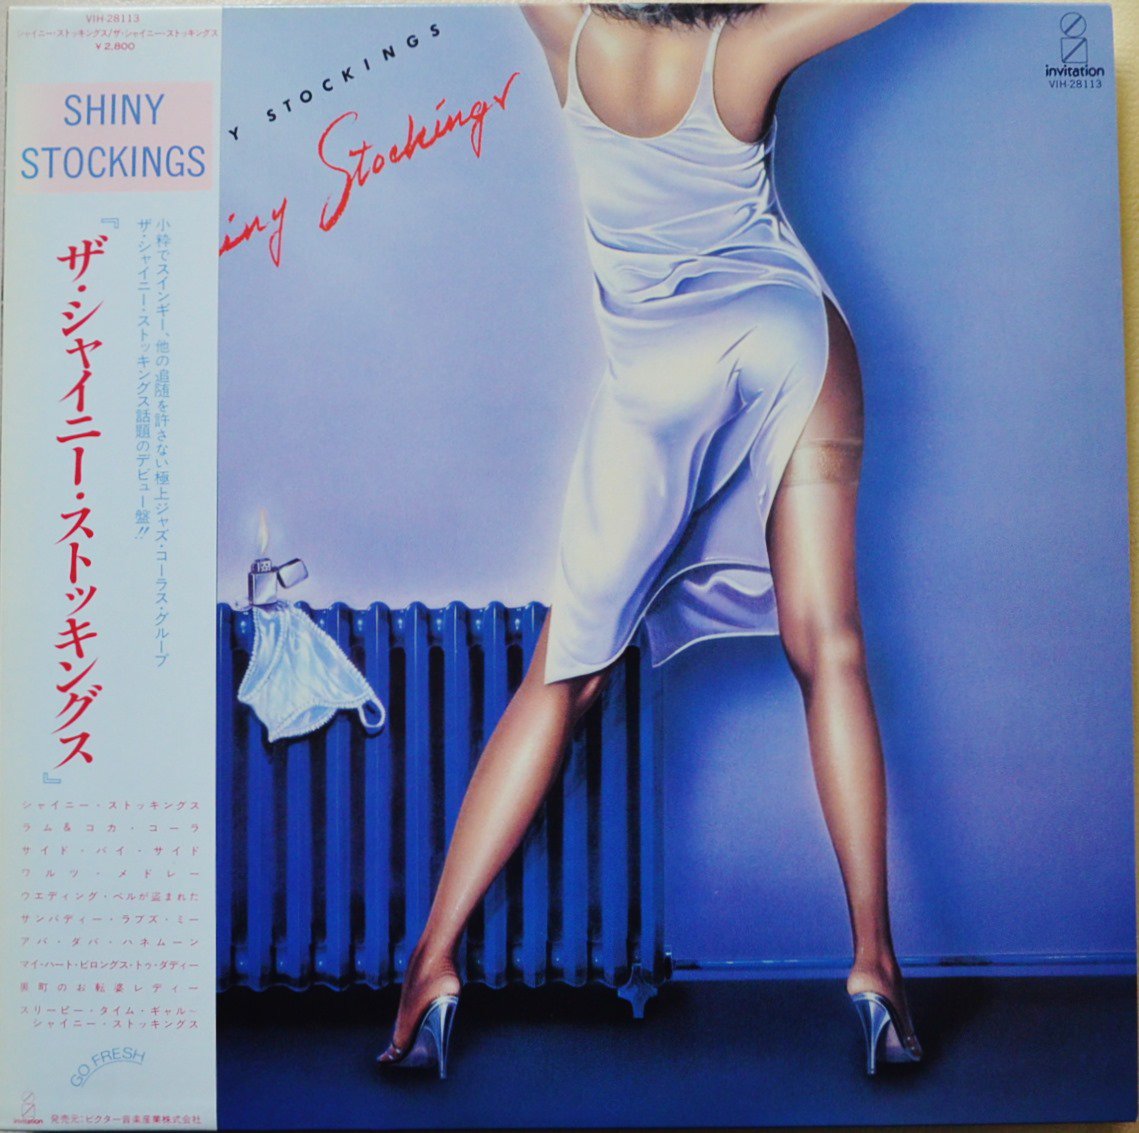 ザ・シャイニー・ストッキングス THE SHINY STOCKINGS / シャイニー・ストッキングス (LP) - HIP TANK RECORDS